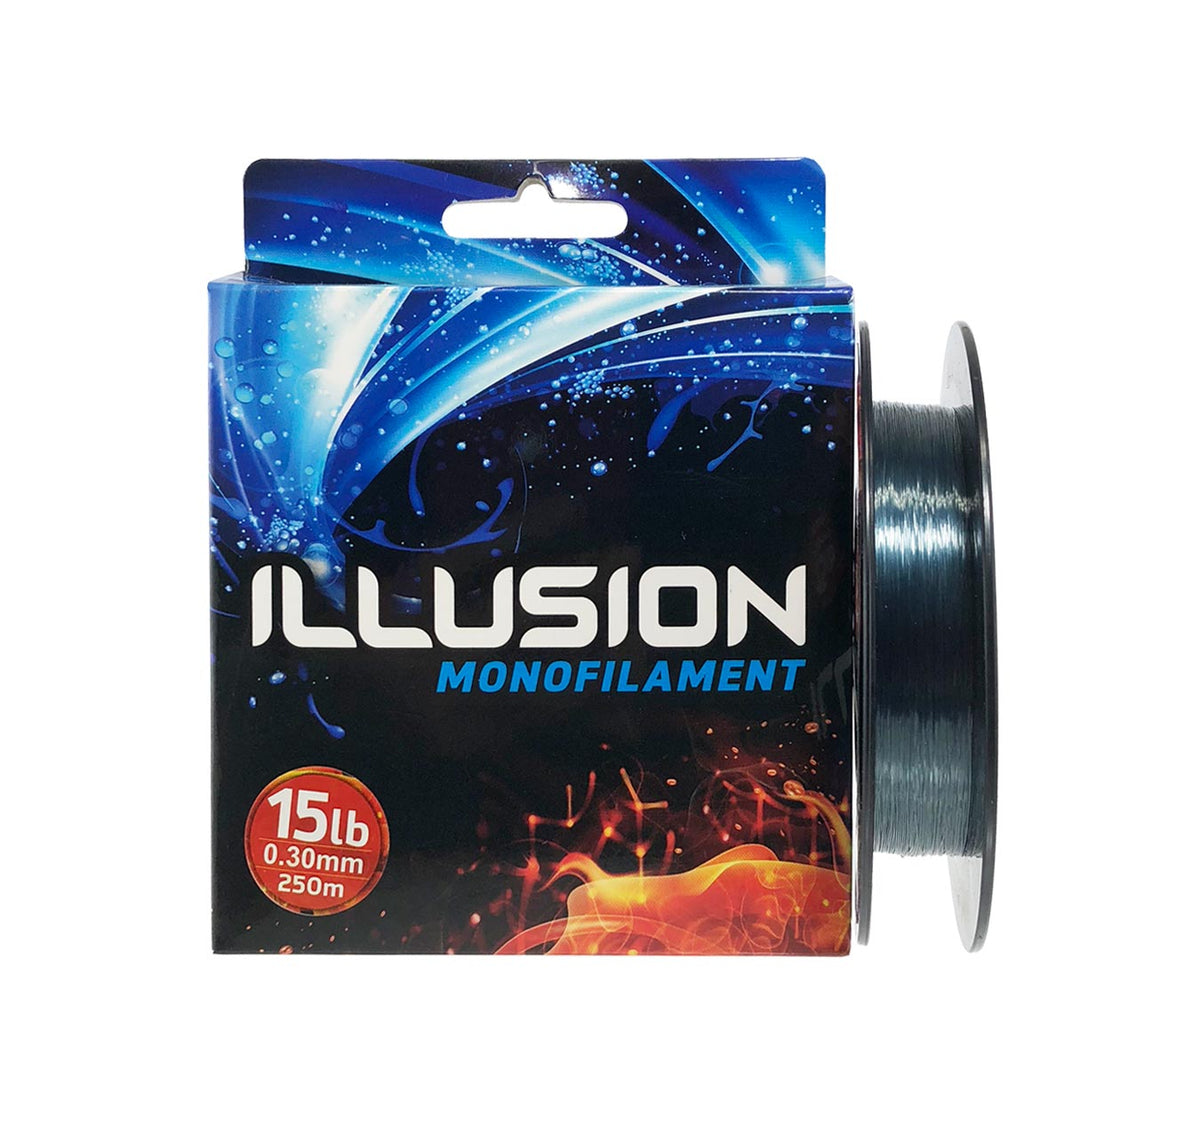 Illusion Monofilament 250m 25lb